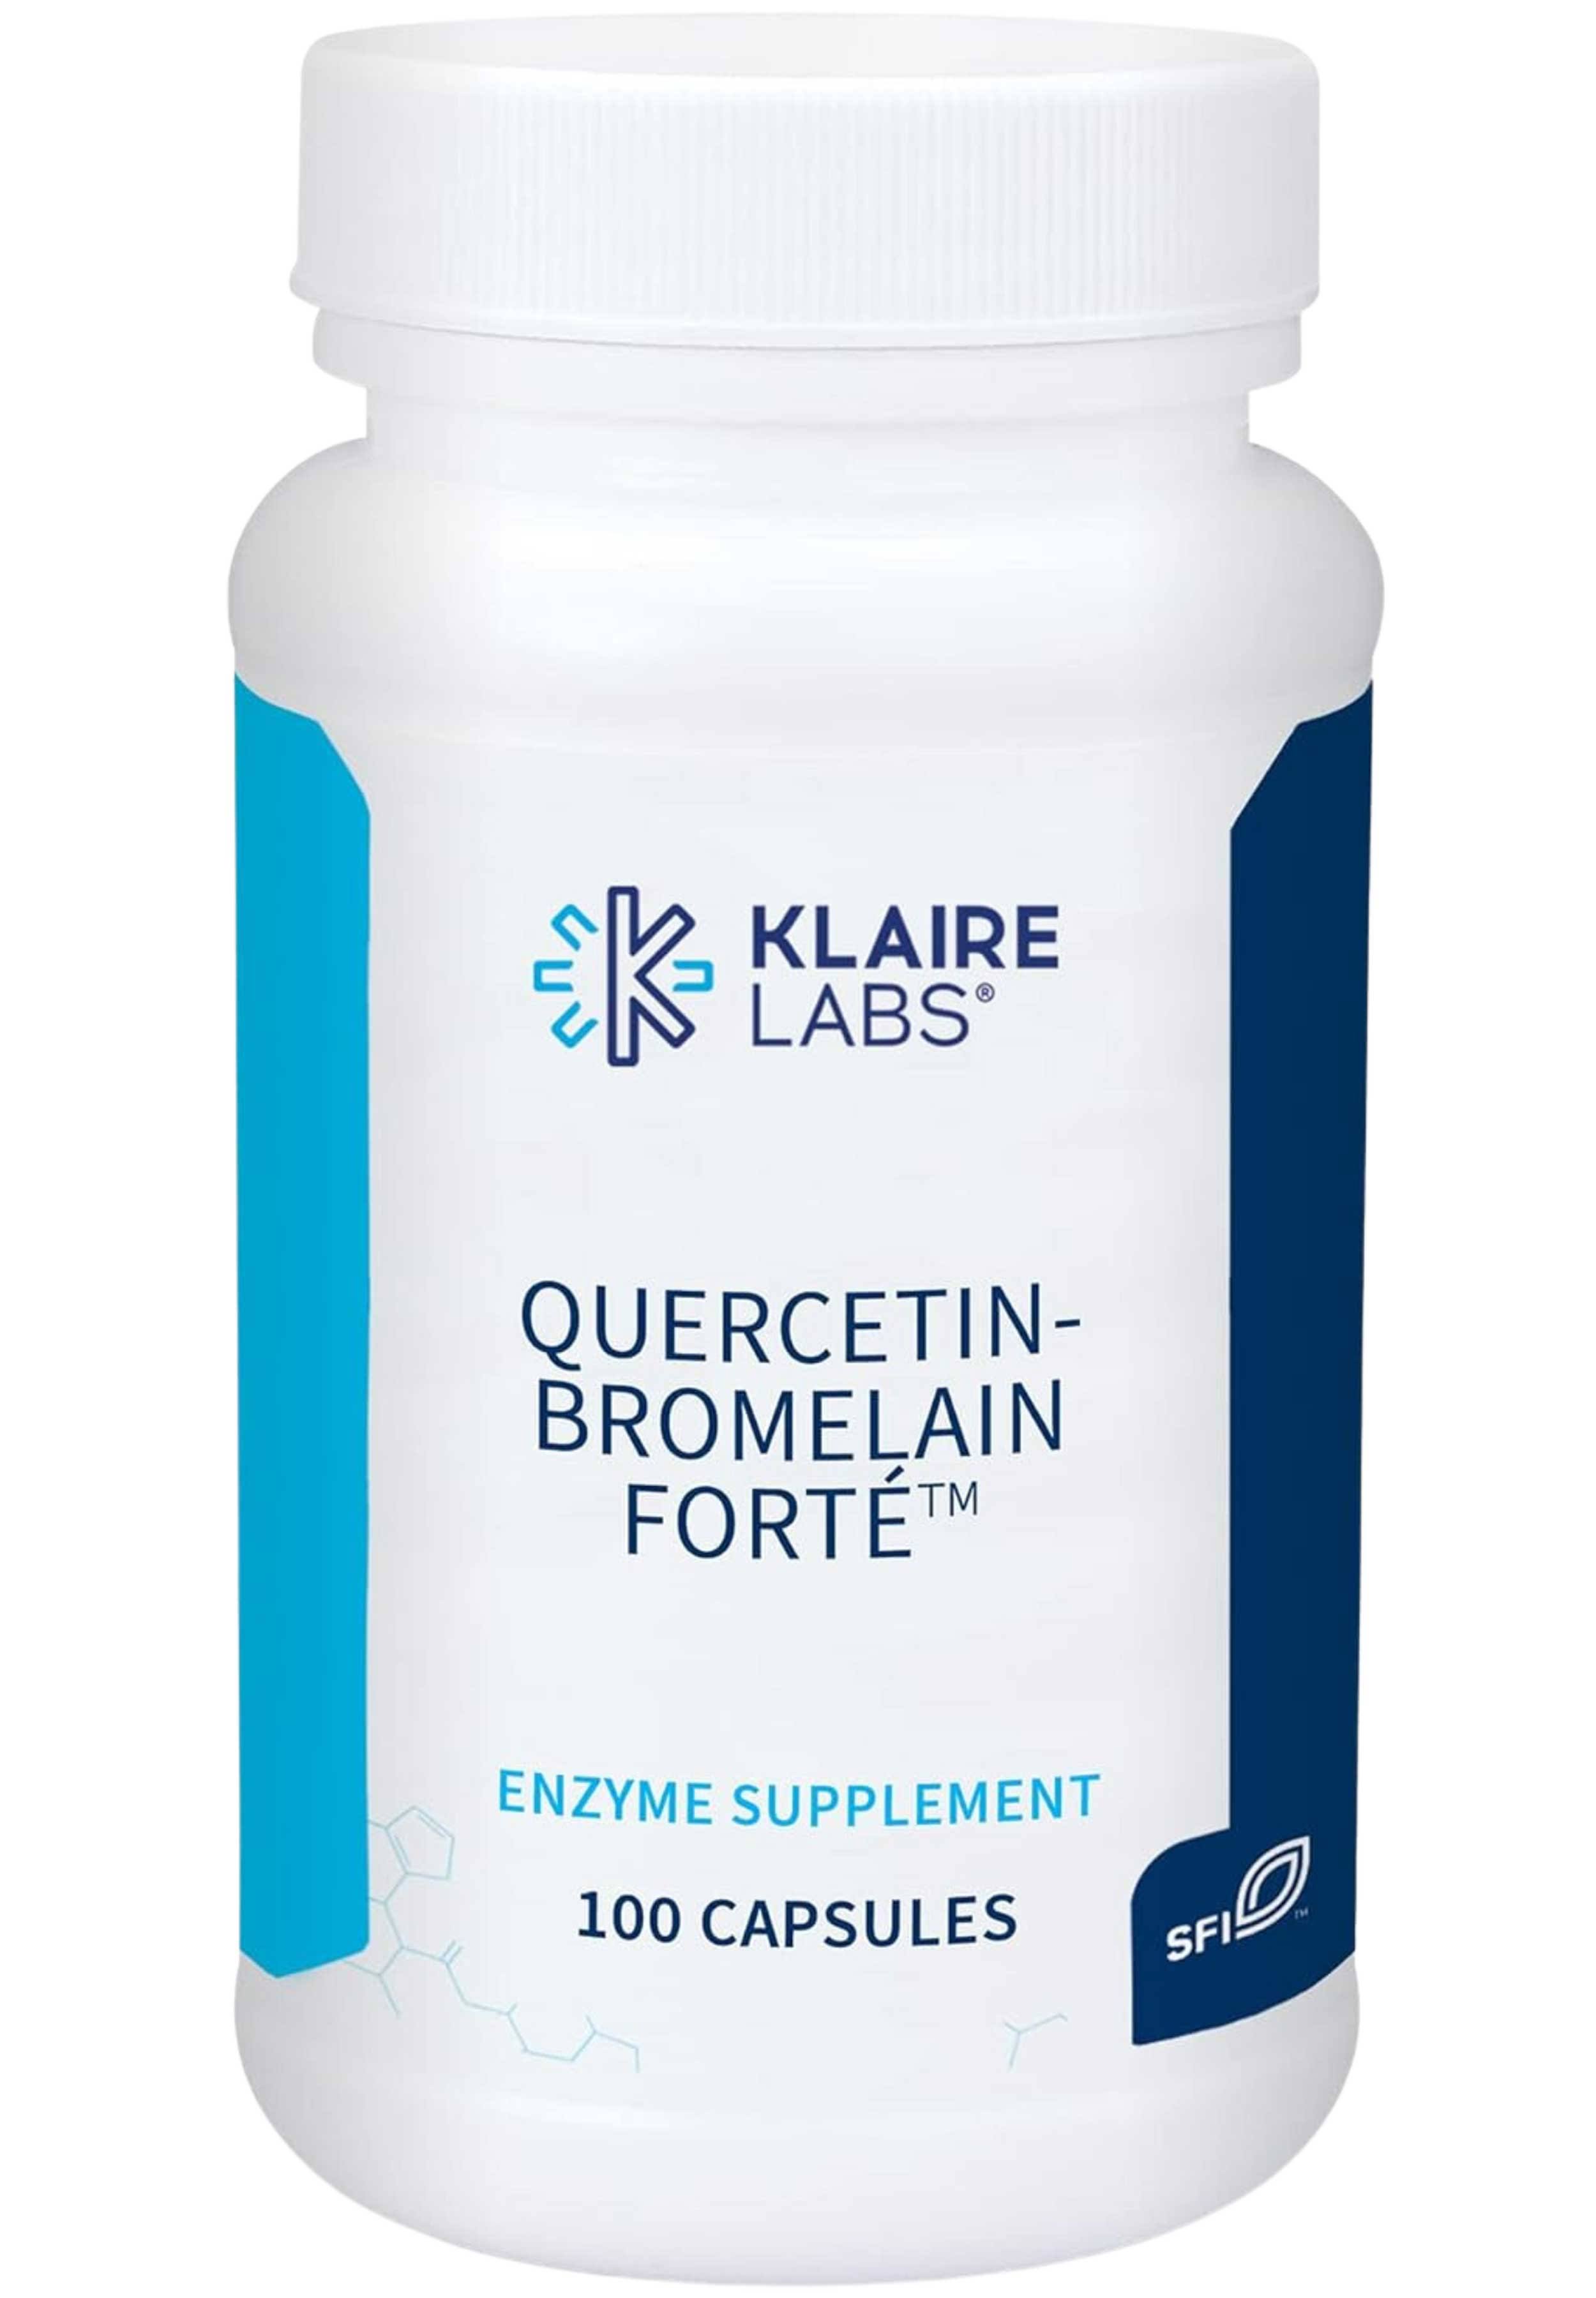 Klaire Labs Quercetin-Bromelain Forte - 100 Capsules